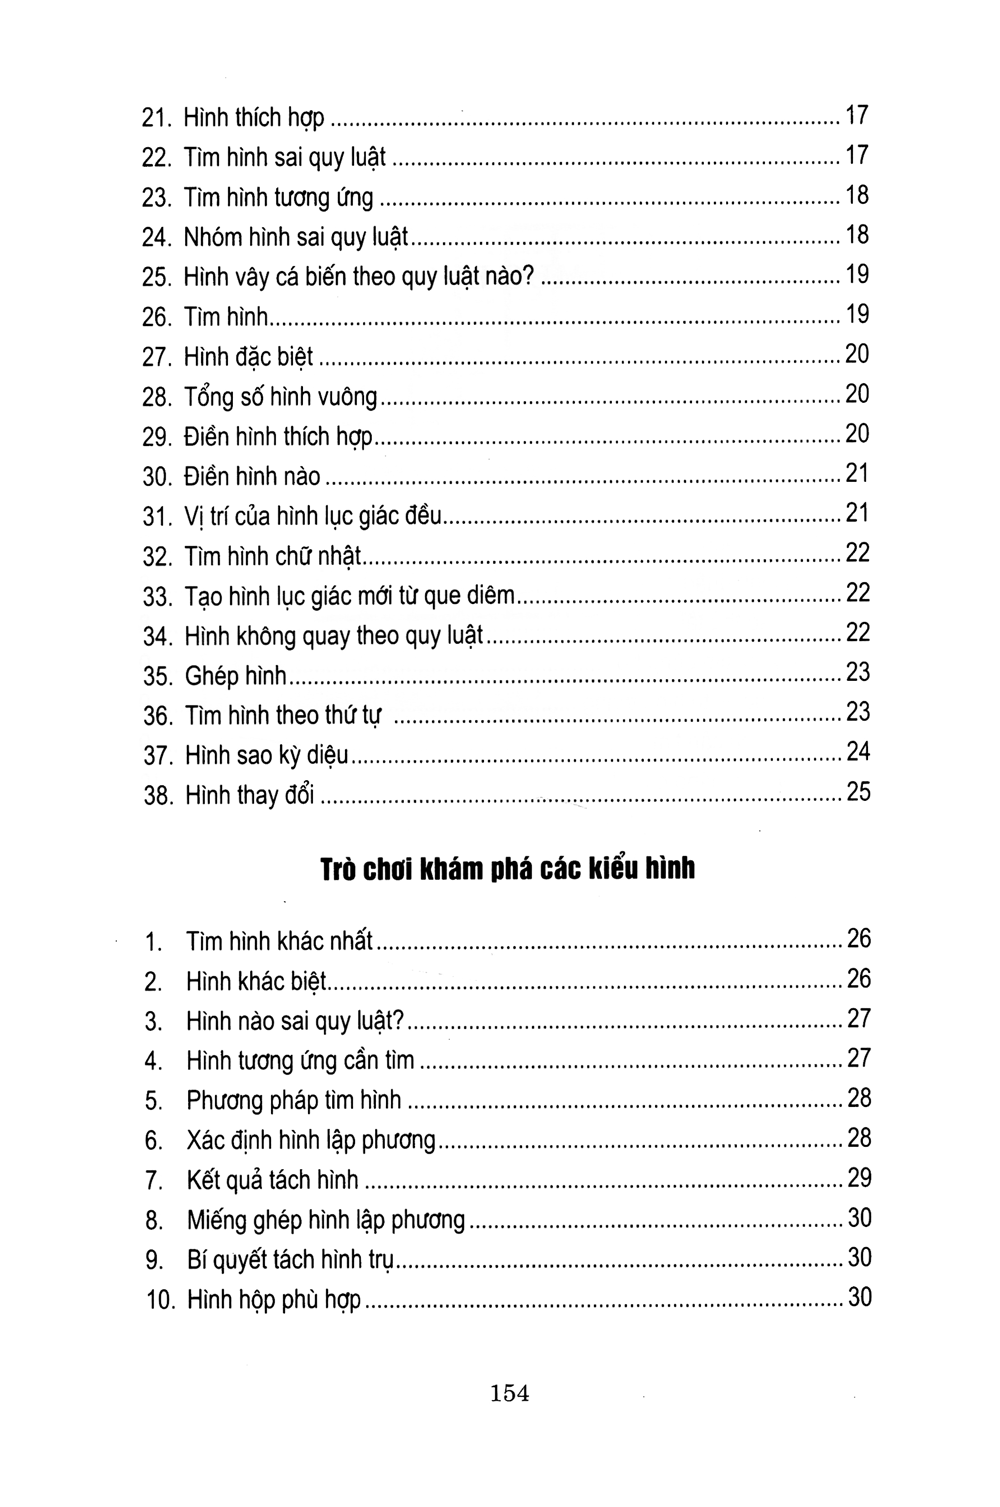 Tủ Sách Luyện Trí Thông Minh - Trò Chơi Phát Triển Tư Duy Từ Những Khối Hình 2017 PDF